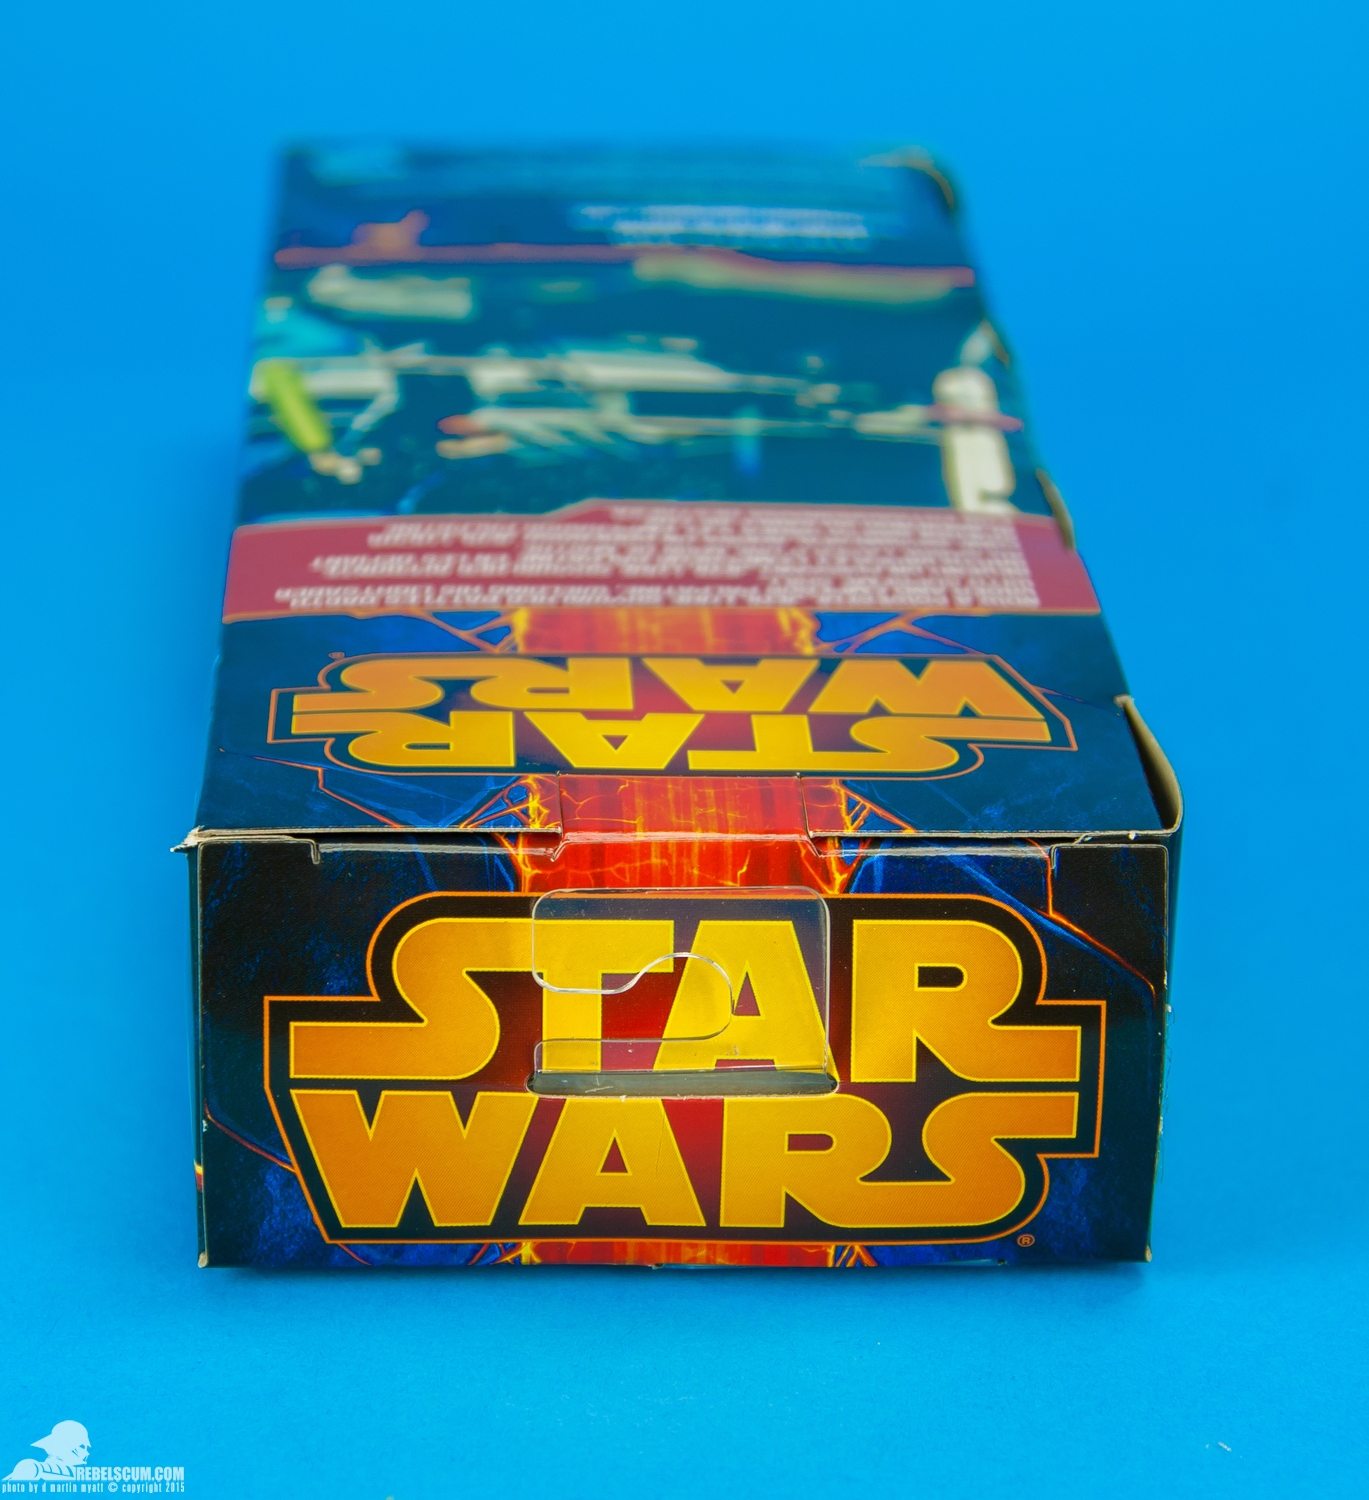 Luke-Skywalker-2014-Star-Wars-12-Inch-Figure-017.jpg